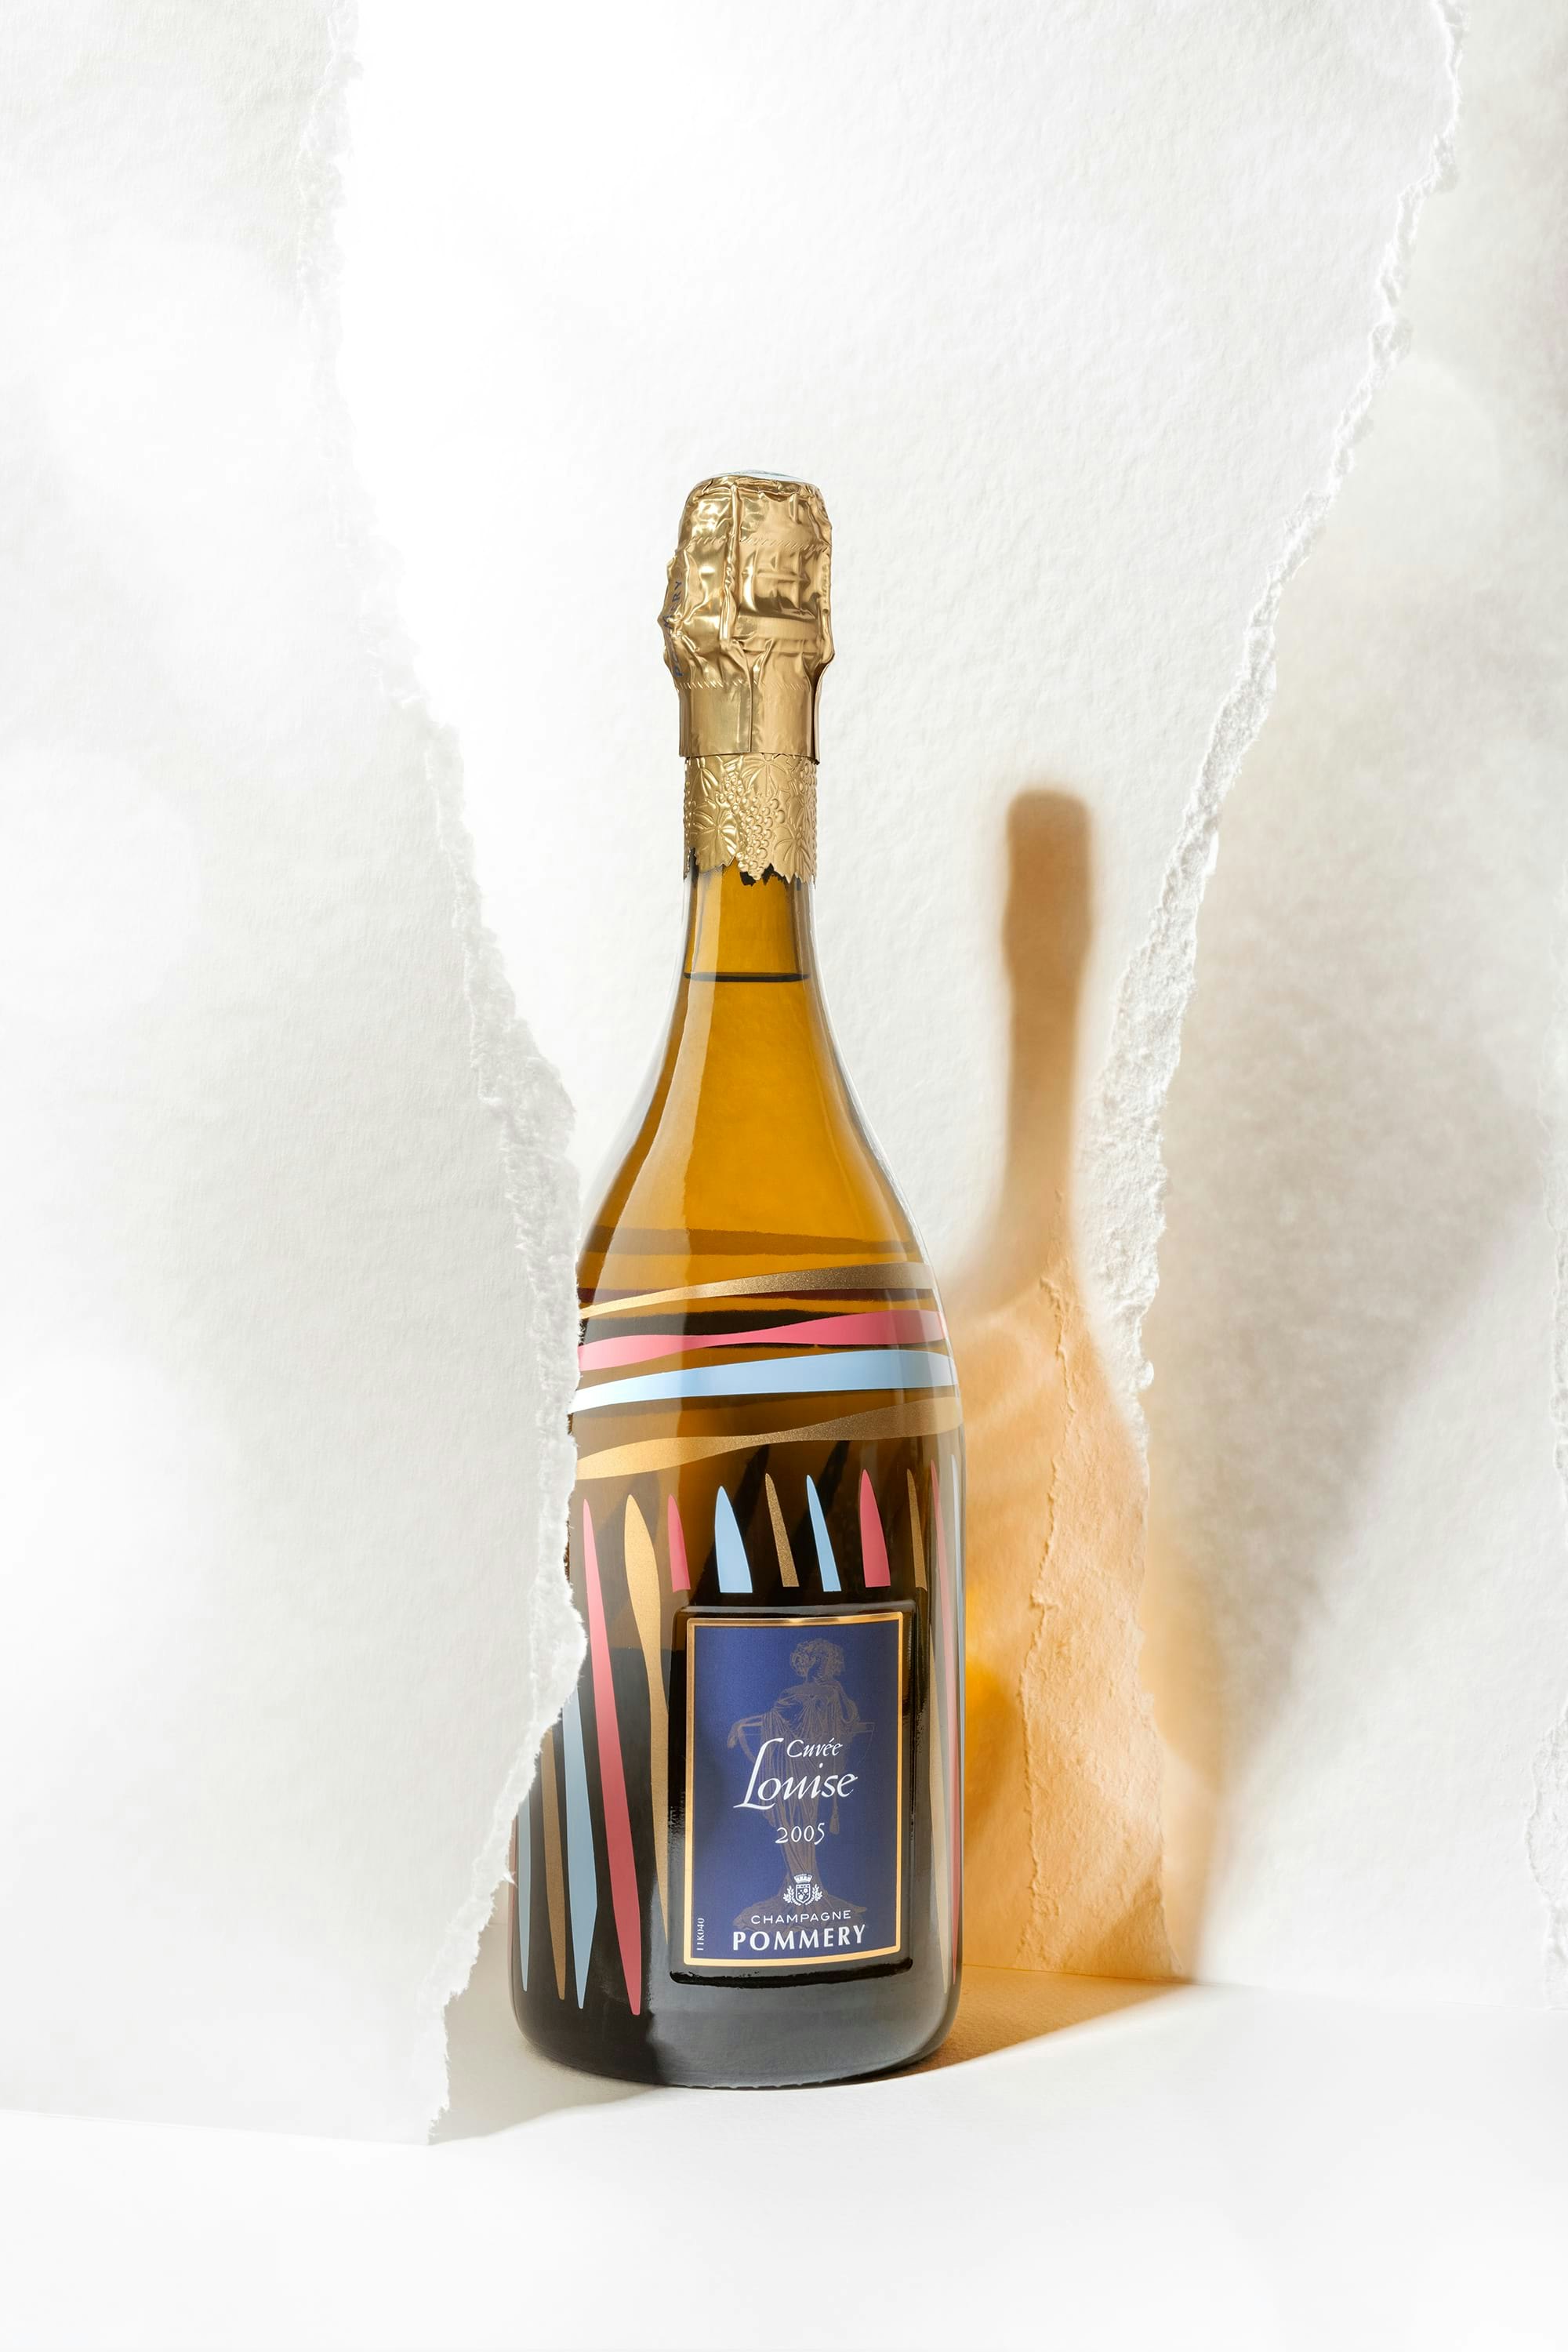 Bottle of Pommery Cuvée louise parcelles 2005